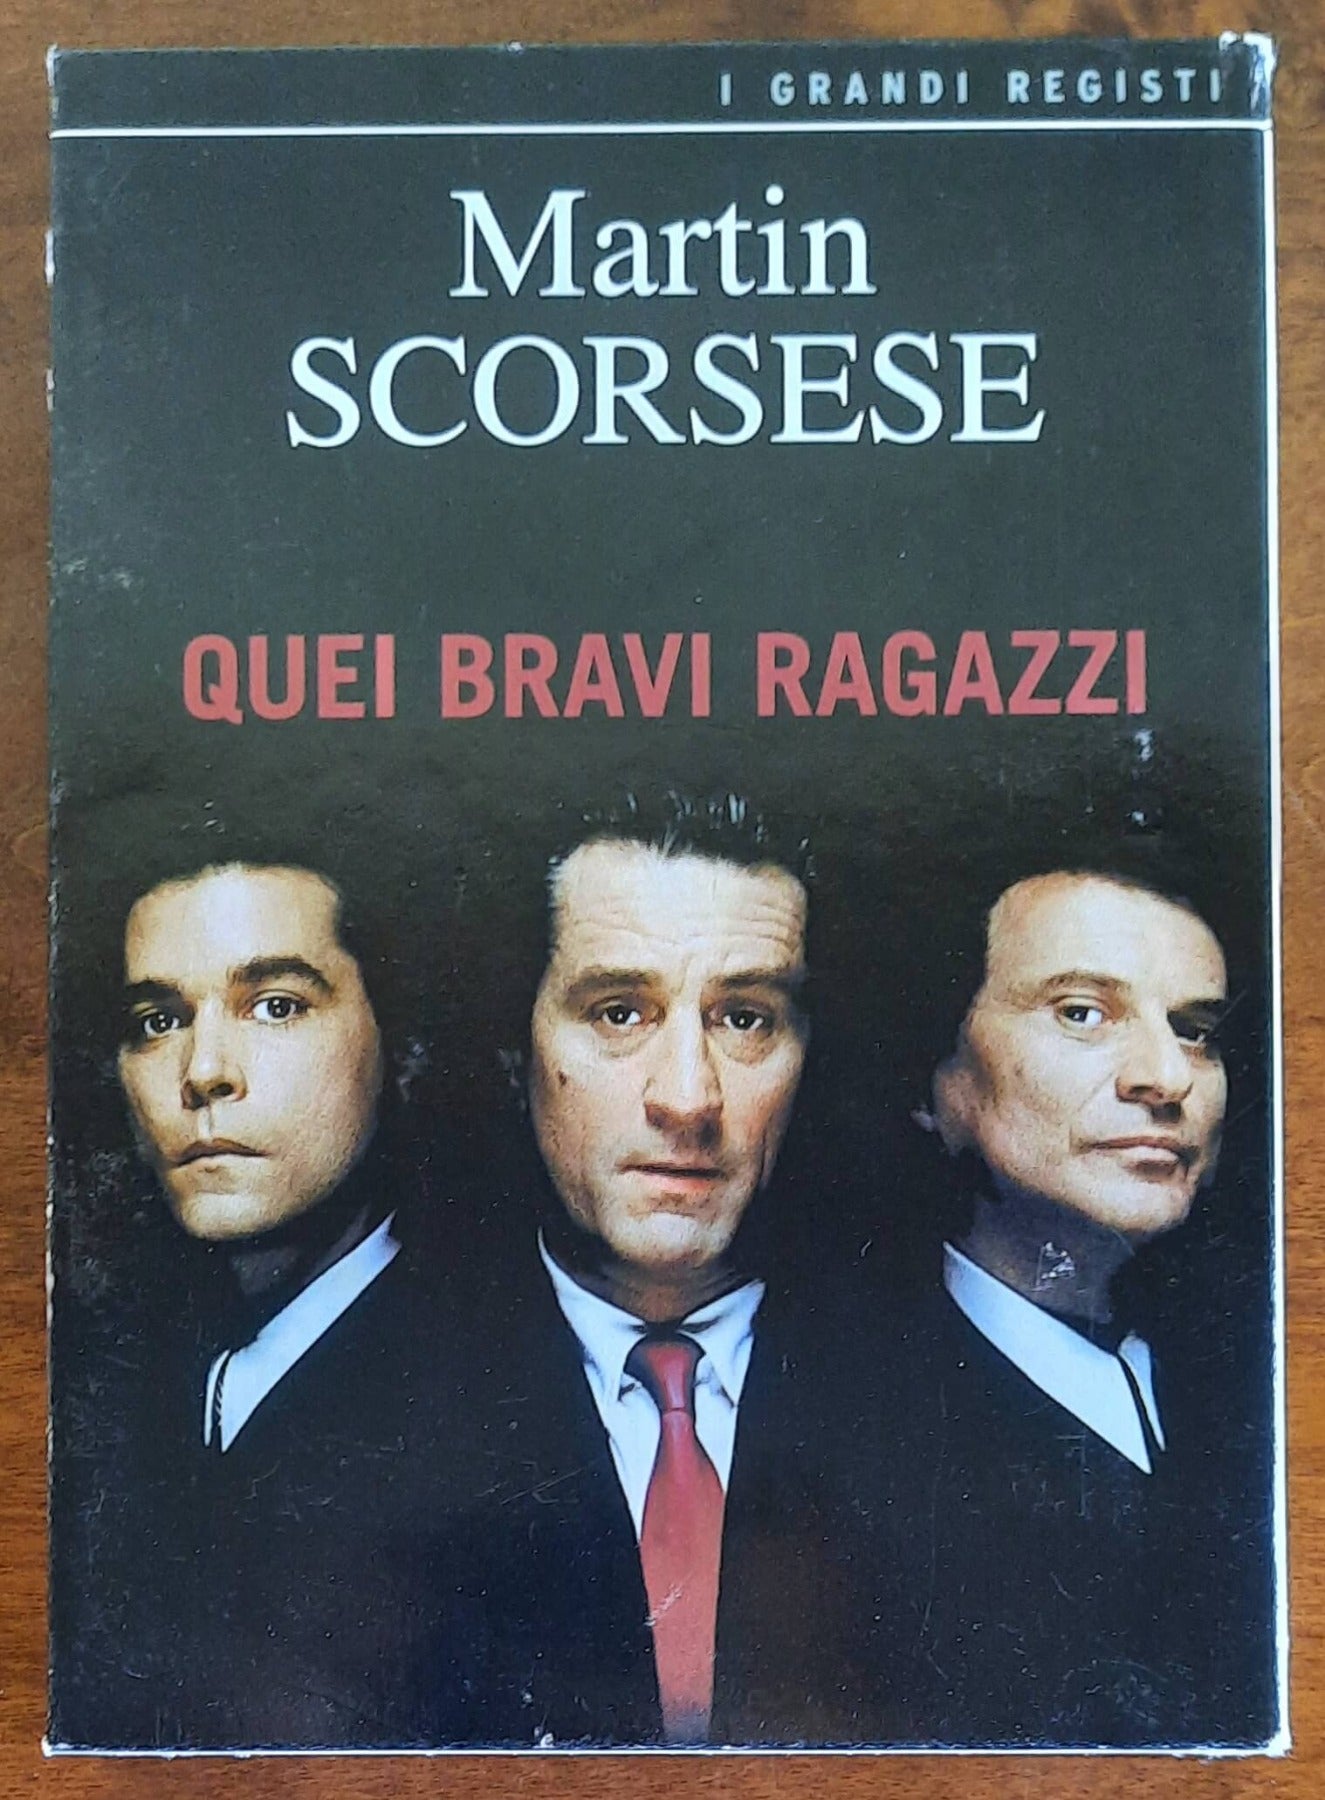 DVD e libro: Quei bravi ragazzi di Martin Scorsese